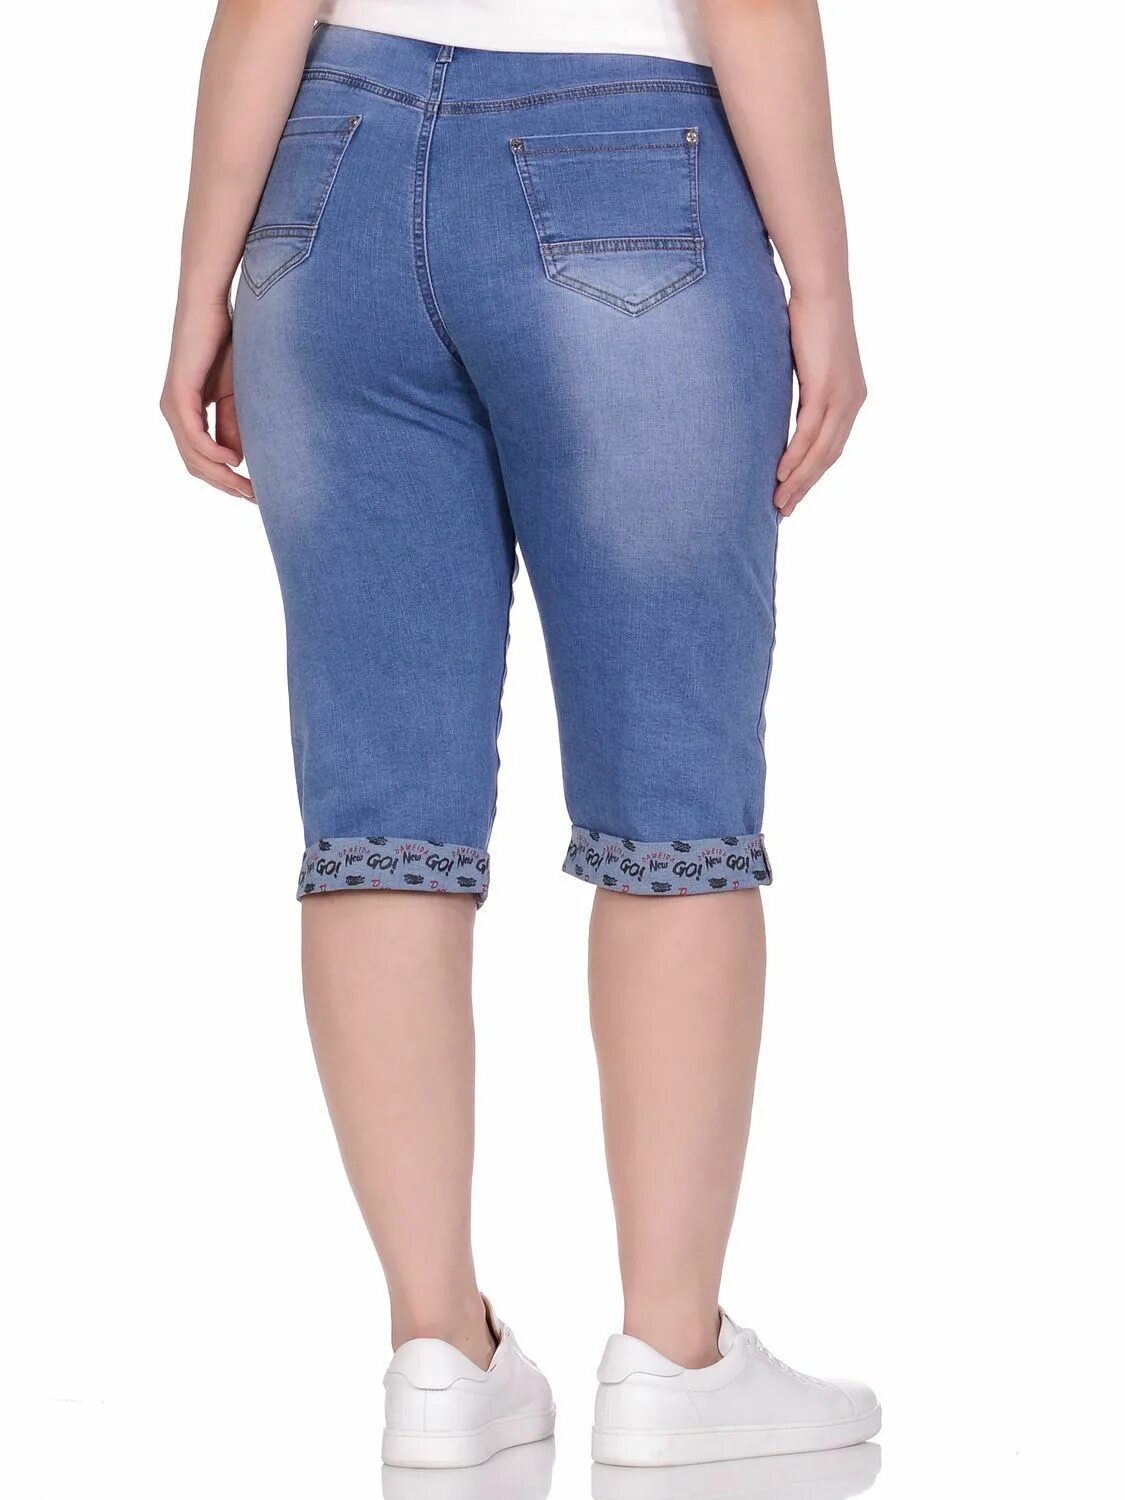 Озон бриджи женские размеры большие. Gloria Jeans бриджи женские джинсовые стретч. Модные джинсовые бриджи. Бриджи с завышенной талией. Бриджи джинсовые женские стрейч.